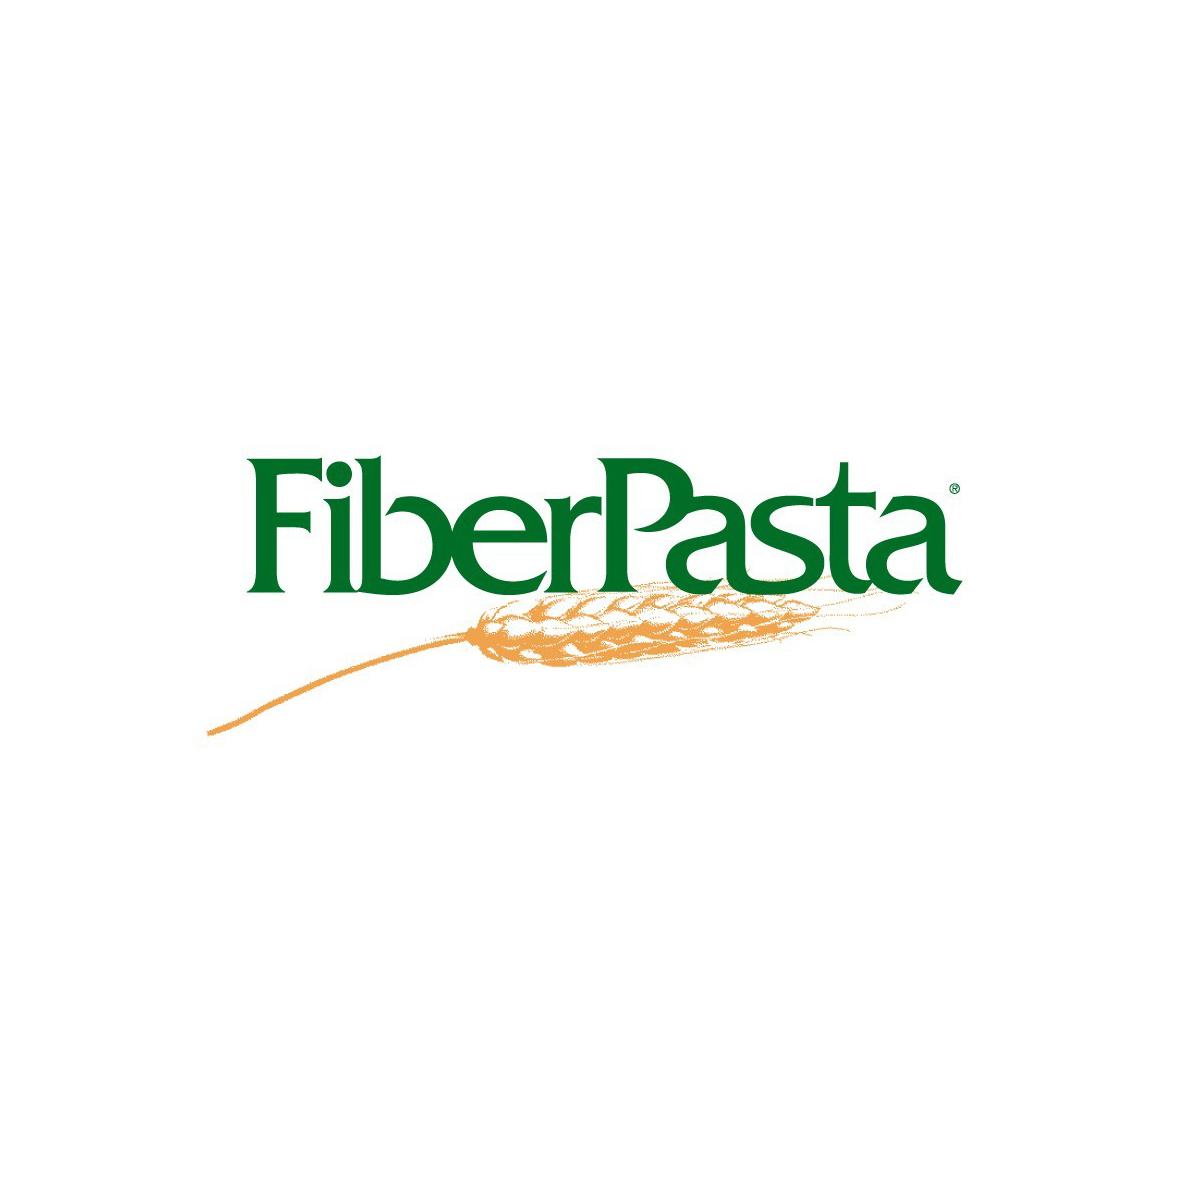 I prodotti a basso indice glicemico di FiberPasta in TV sulle reti Mediaset 